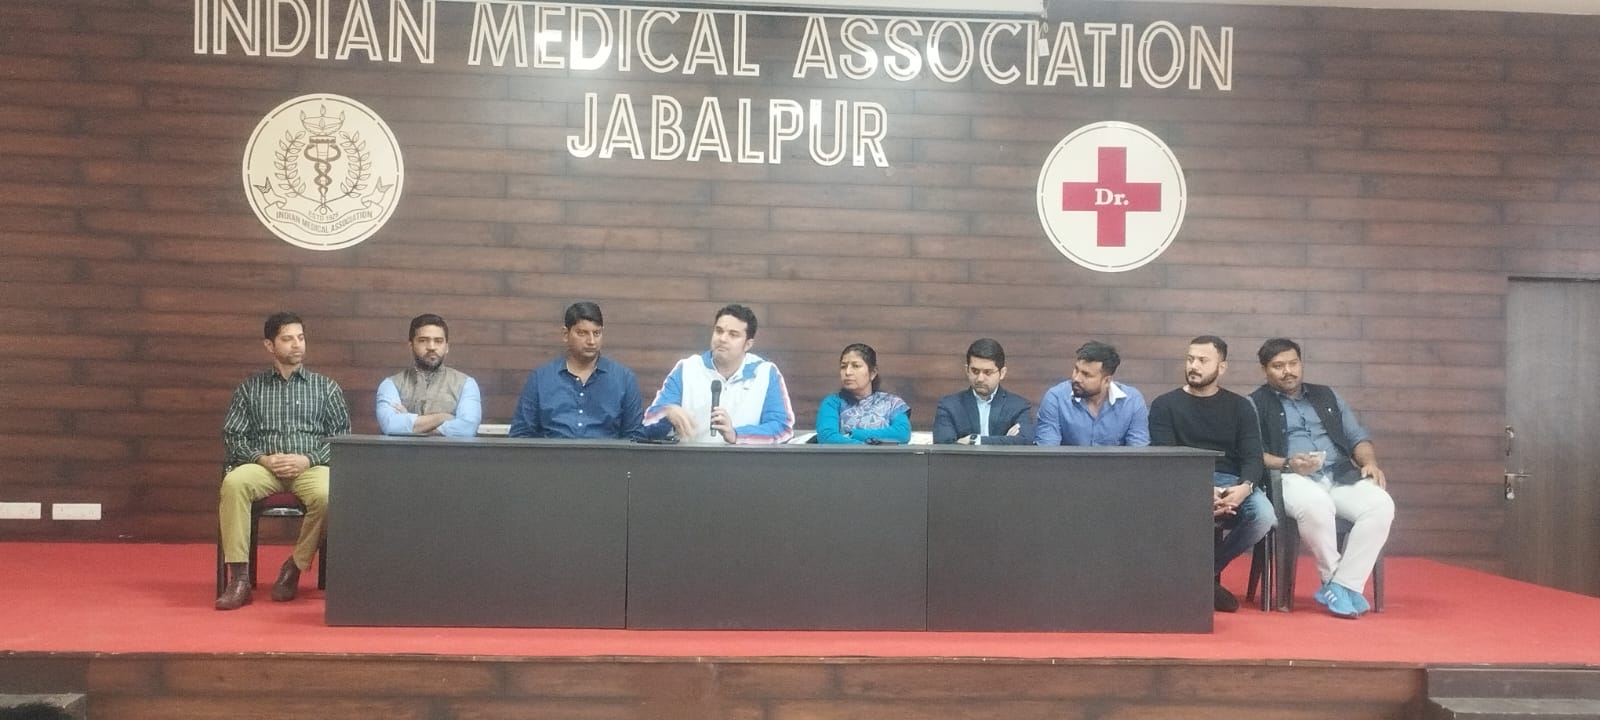 जबलपुर में निजी अस्पताल और एंबुलेंस संचालकों के खिलाफ इंडियन मेडिकल एसोसिएशन हुआ एकजुट